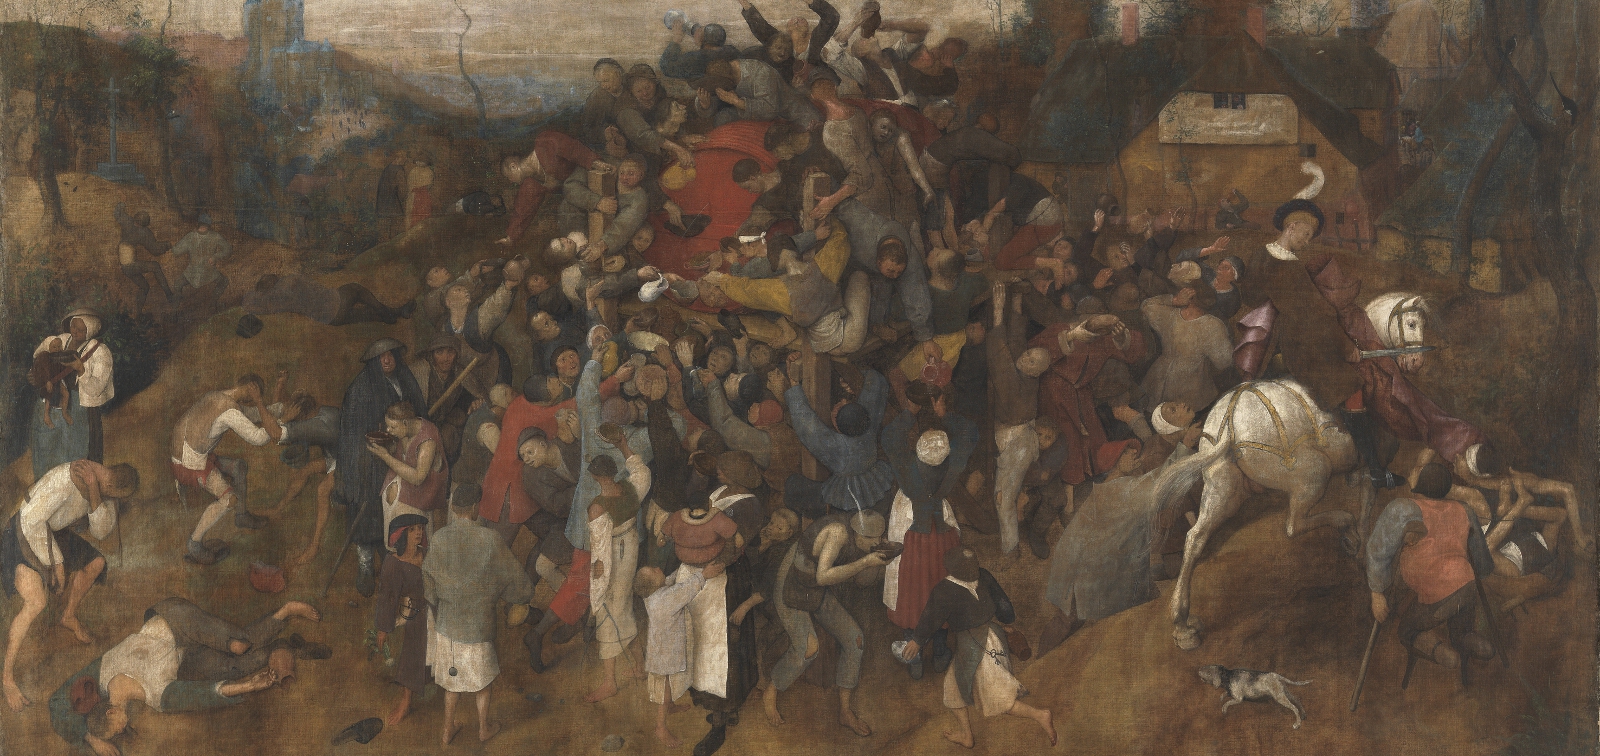 Exposición didáctica: El vino de la fiesta de San Martín, de Pieter Bruegel el Viejo